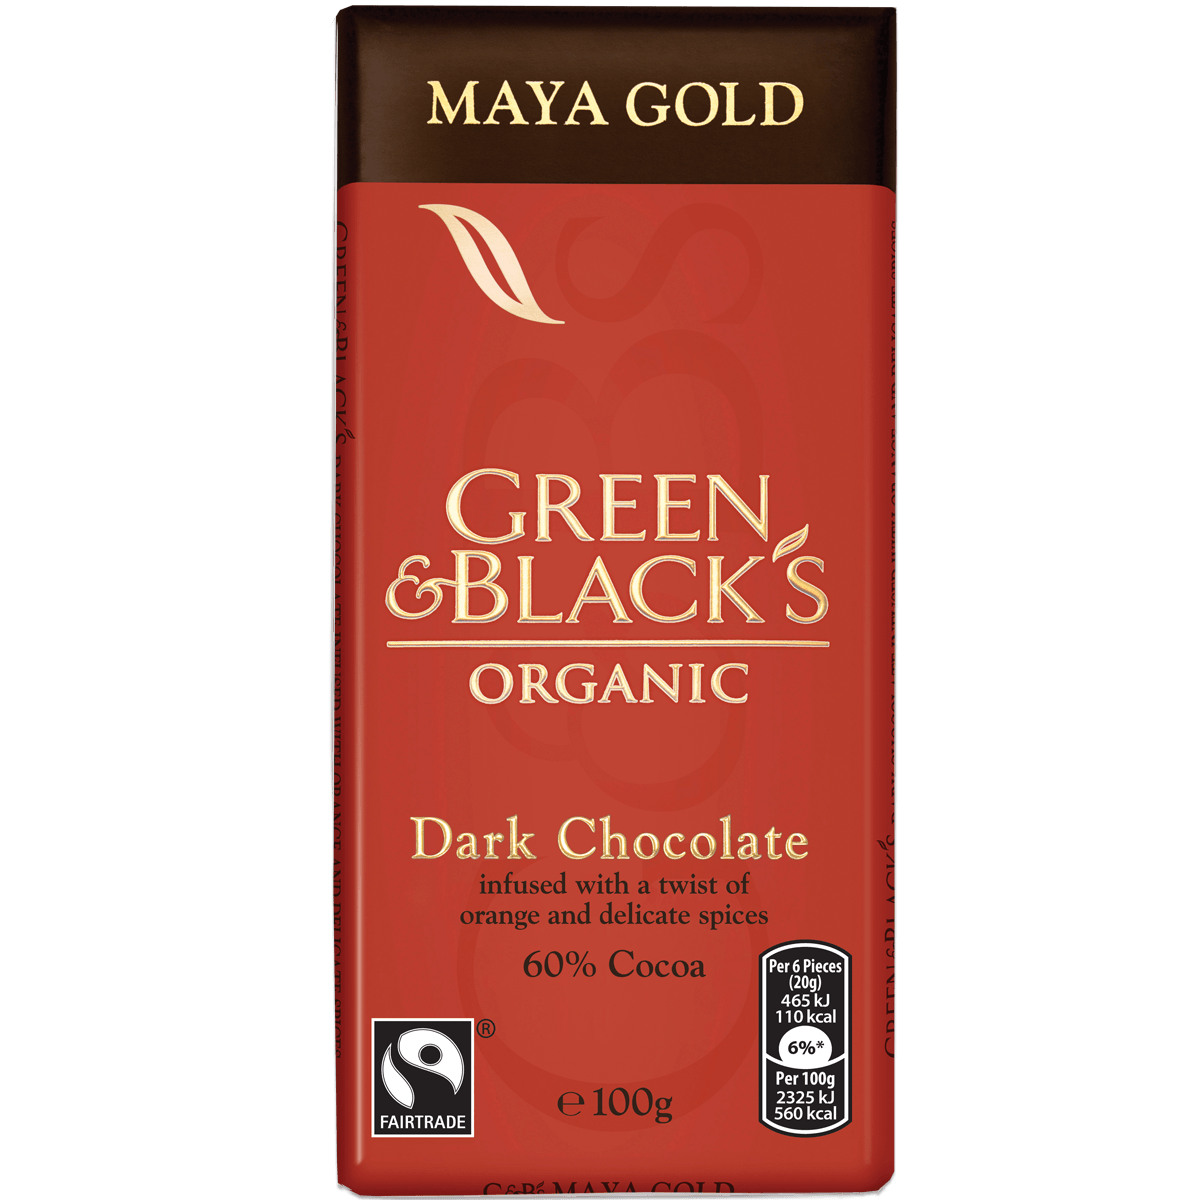 Green Black and Gold Logo - Green & Black's Maya Gold 100g Bar. Green and Black's